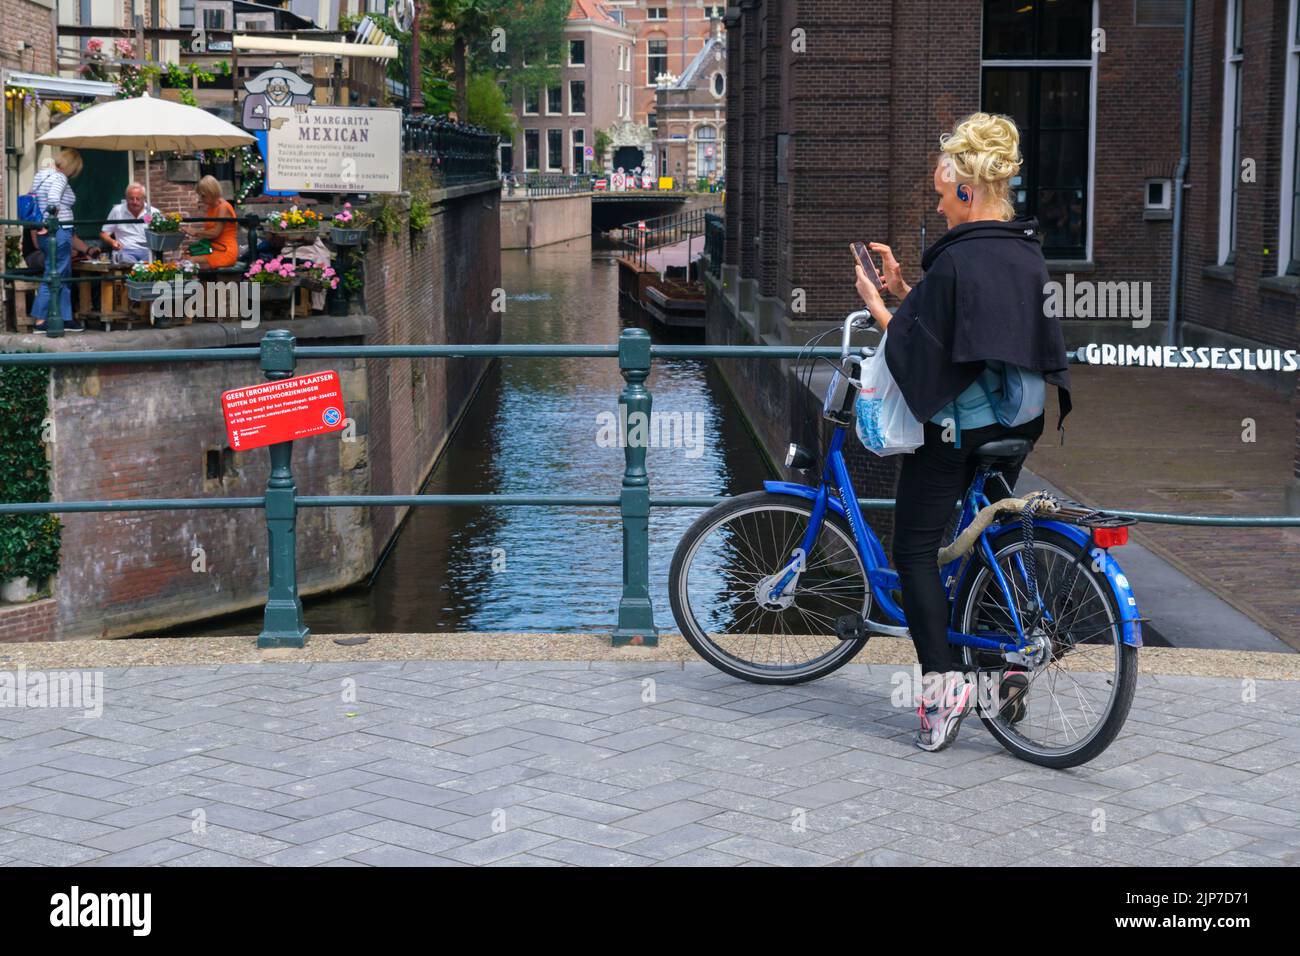 Ámsterdam, Países Bajos - 21 de junio de 2022: Mujer en bicicleta en el puente Grimnessesluis Foto de stock